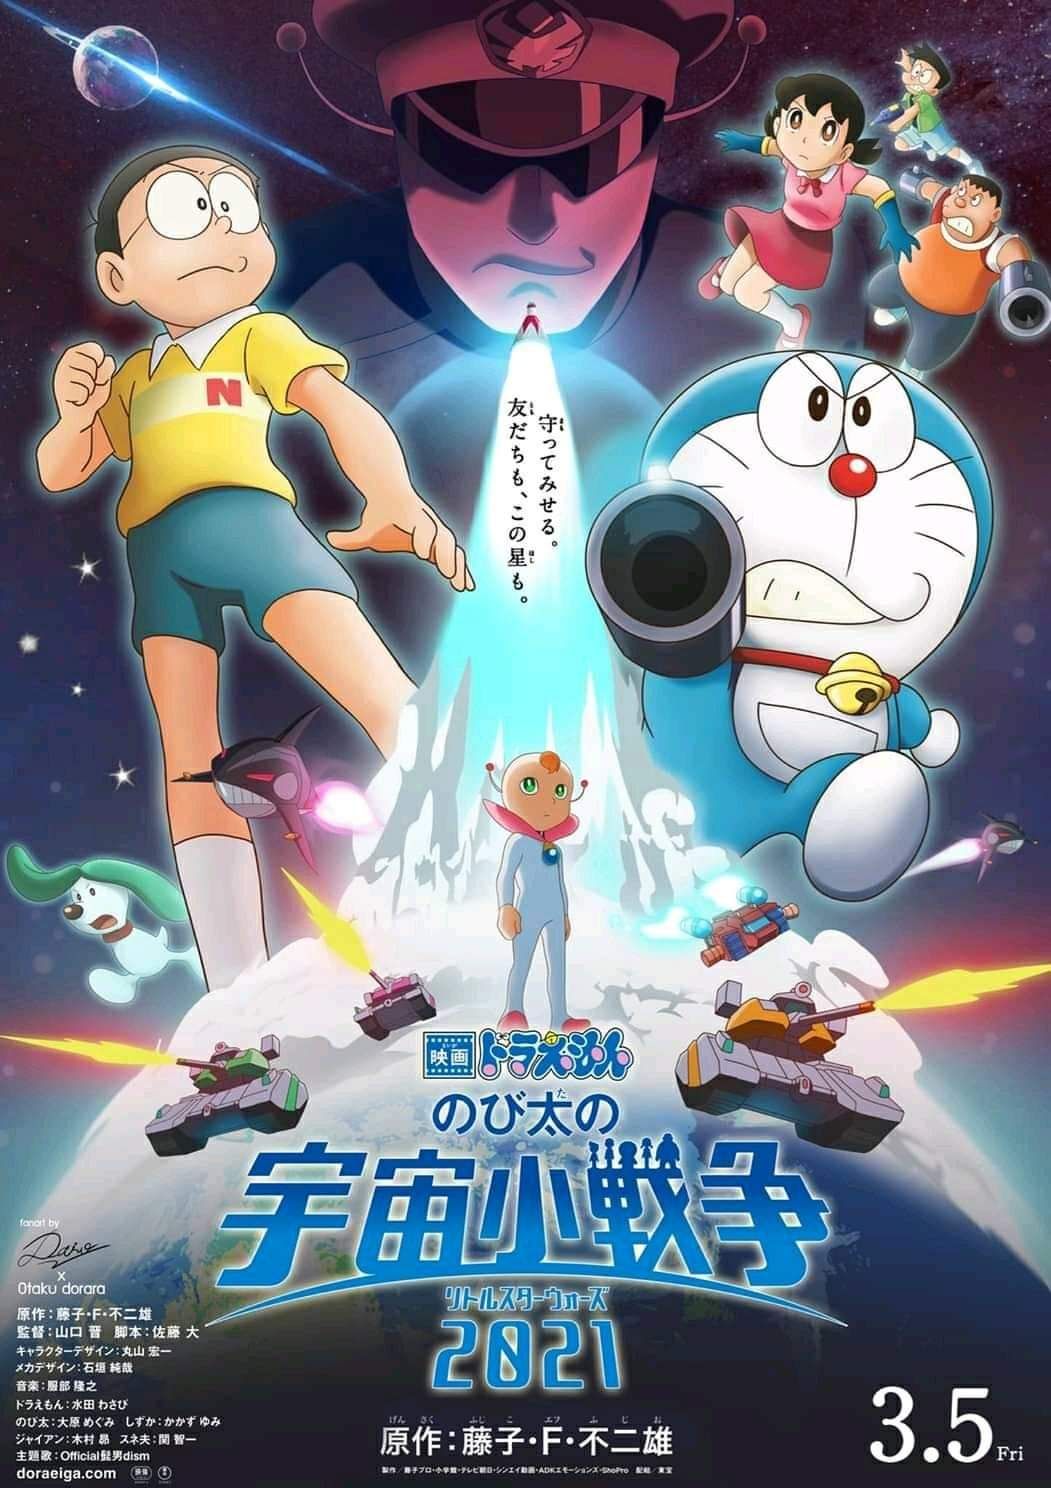 Jujutsu Kaisen 0 nhường lại vị trí top 1 tại phòng vé Nhật Bản cho movie Doraemon mới